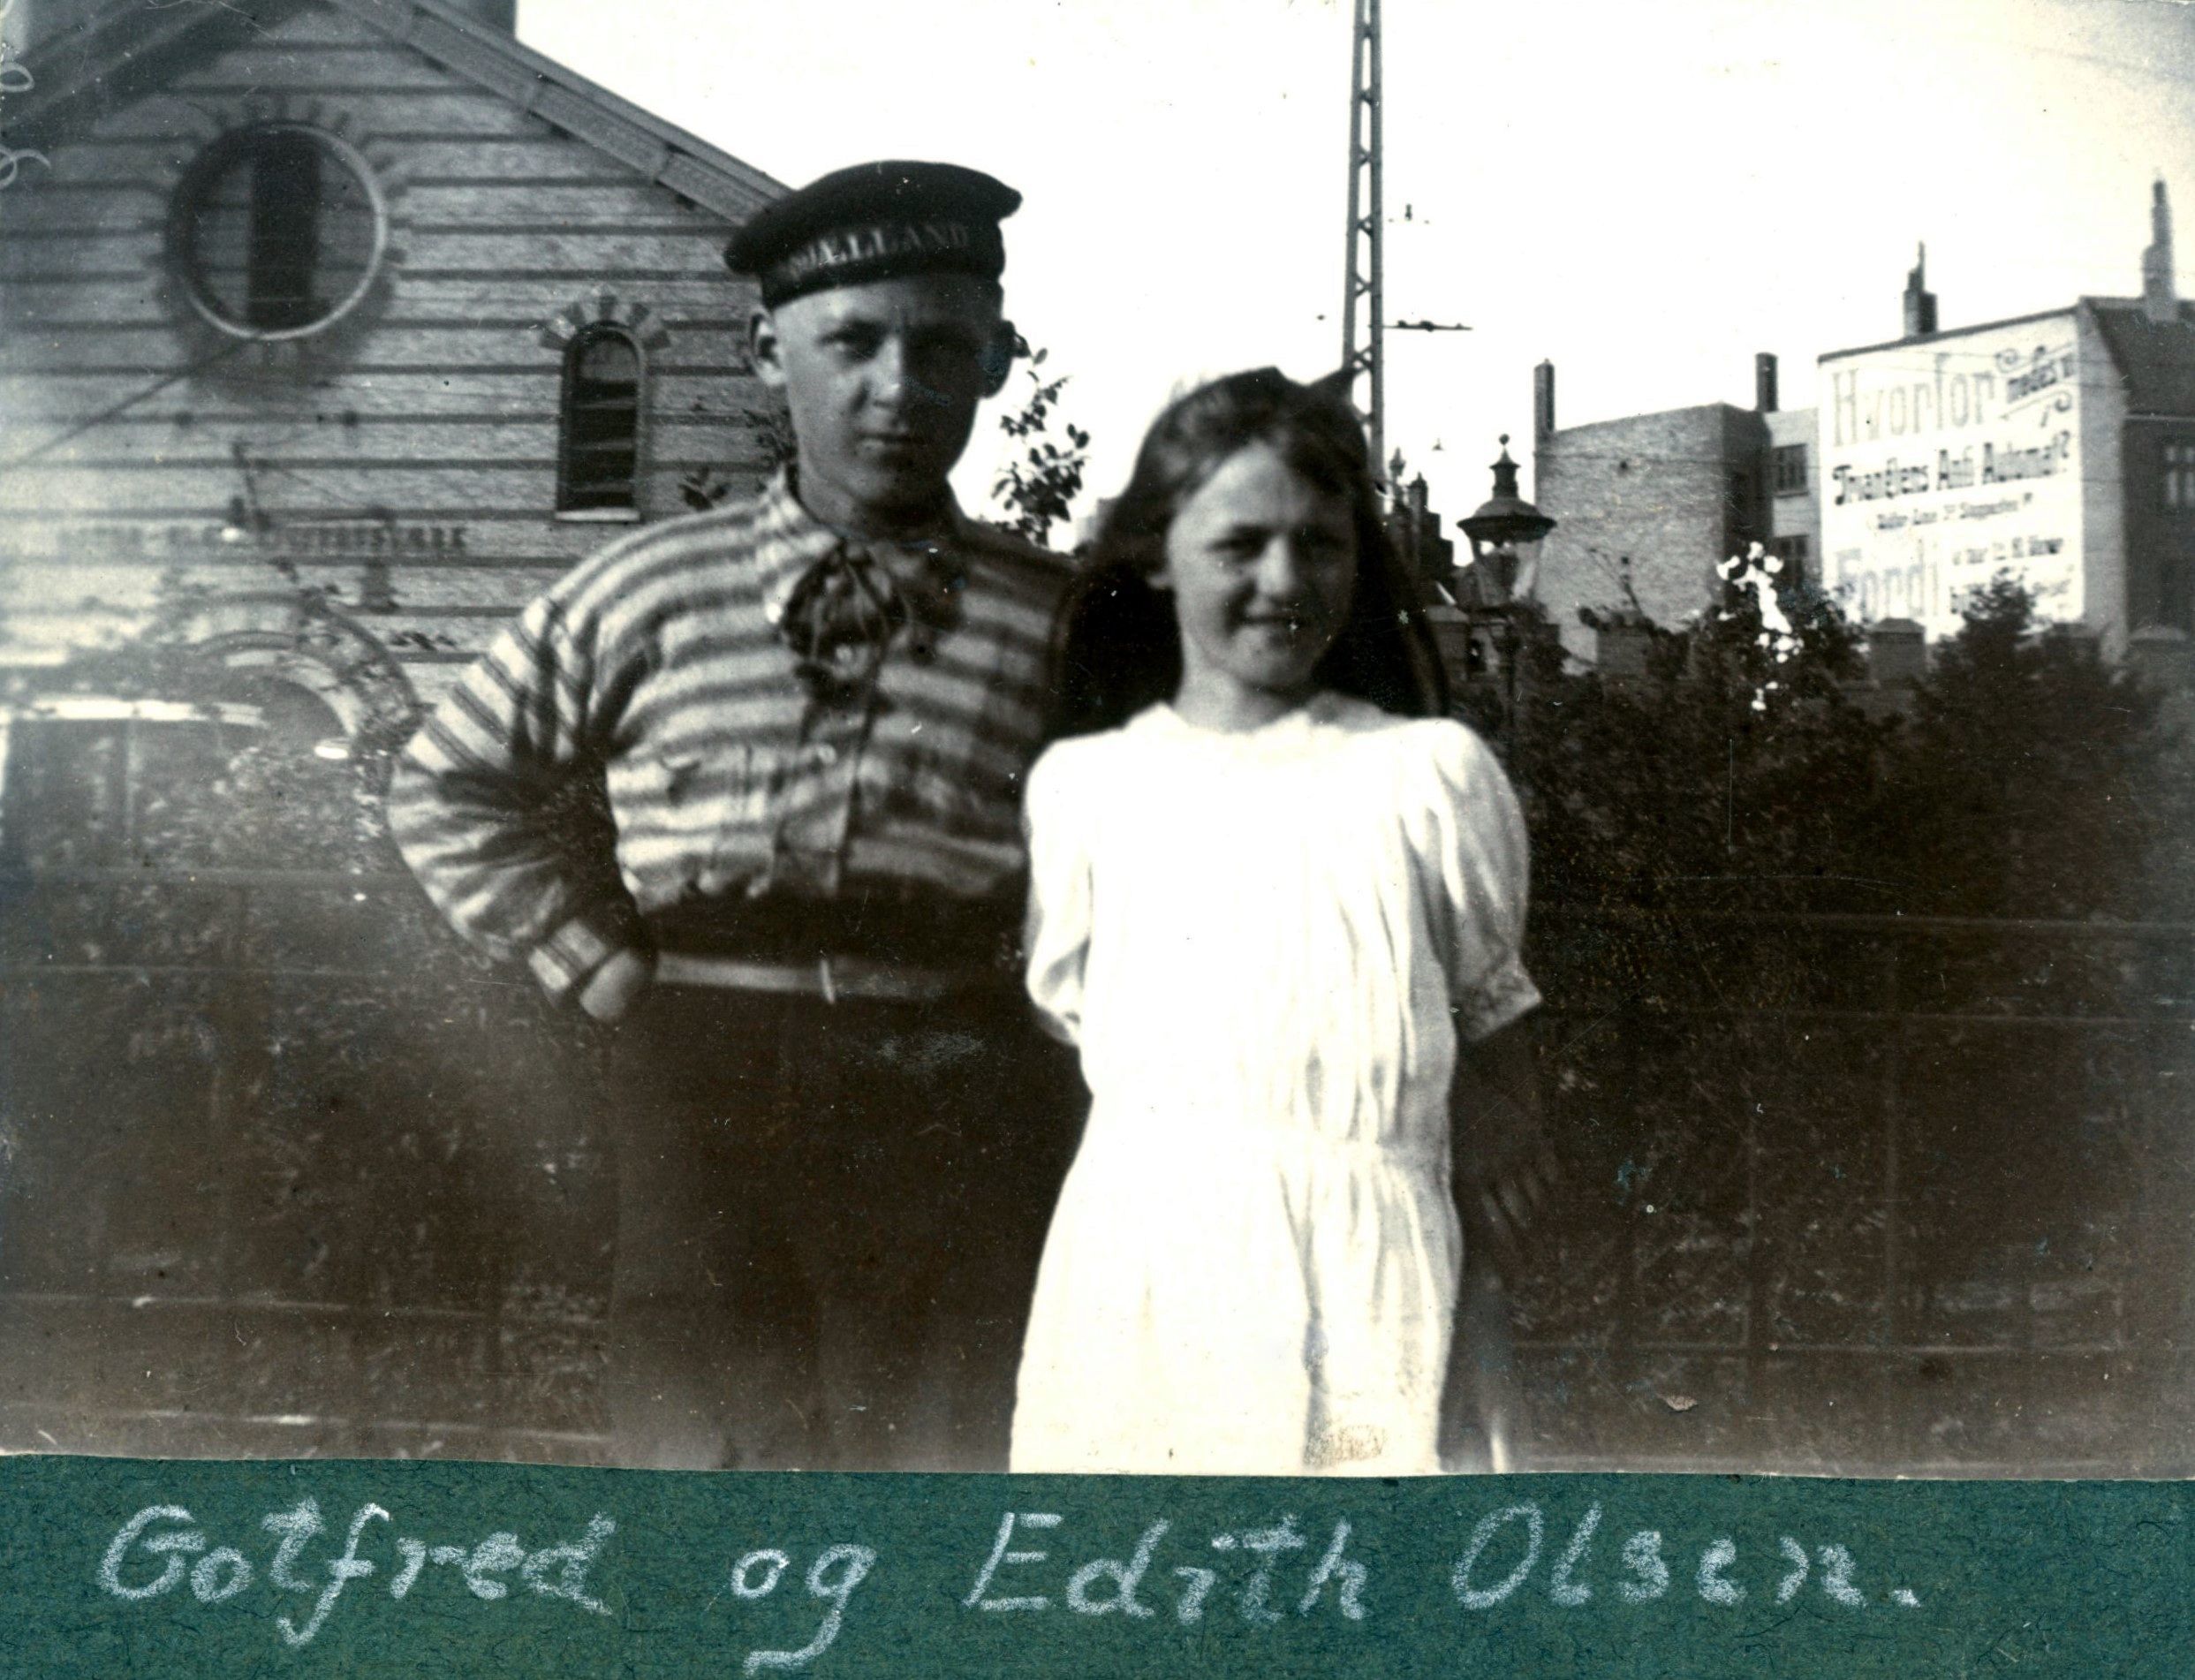 70.220 Gotfred og Edith Olsen med Østerbros posthus og elektricitetsværk i baggrunden.